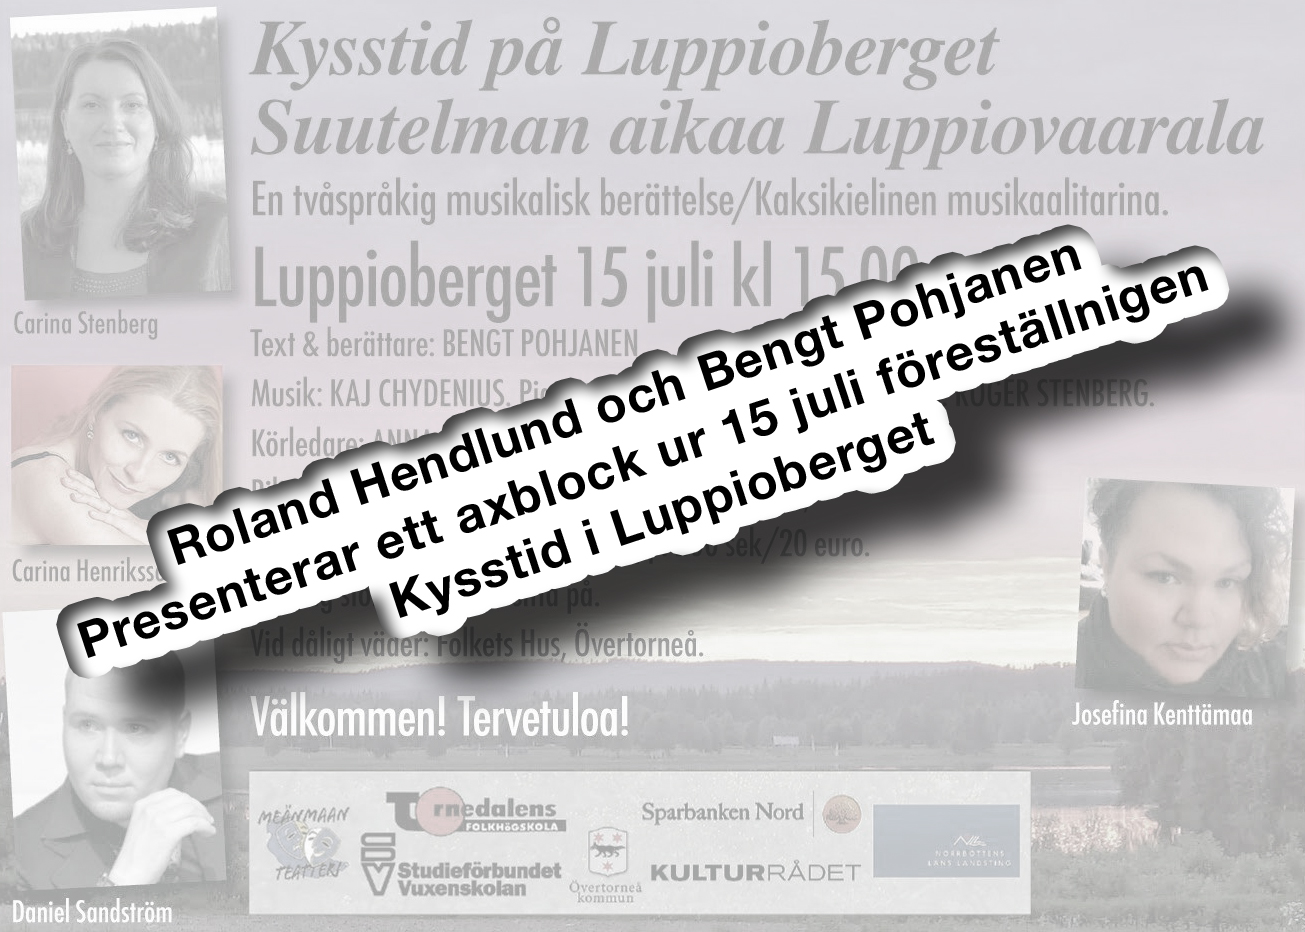 ”Kysstid på Luppioberget”, Roland.H och Bengt.P presenterar..